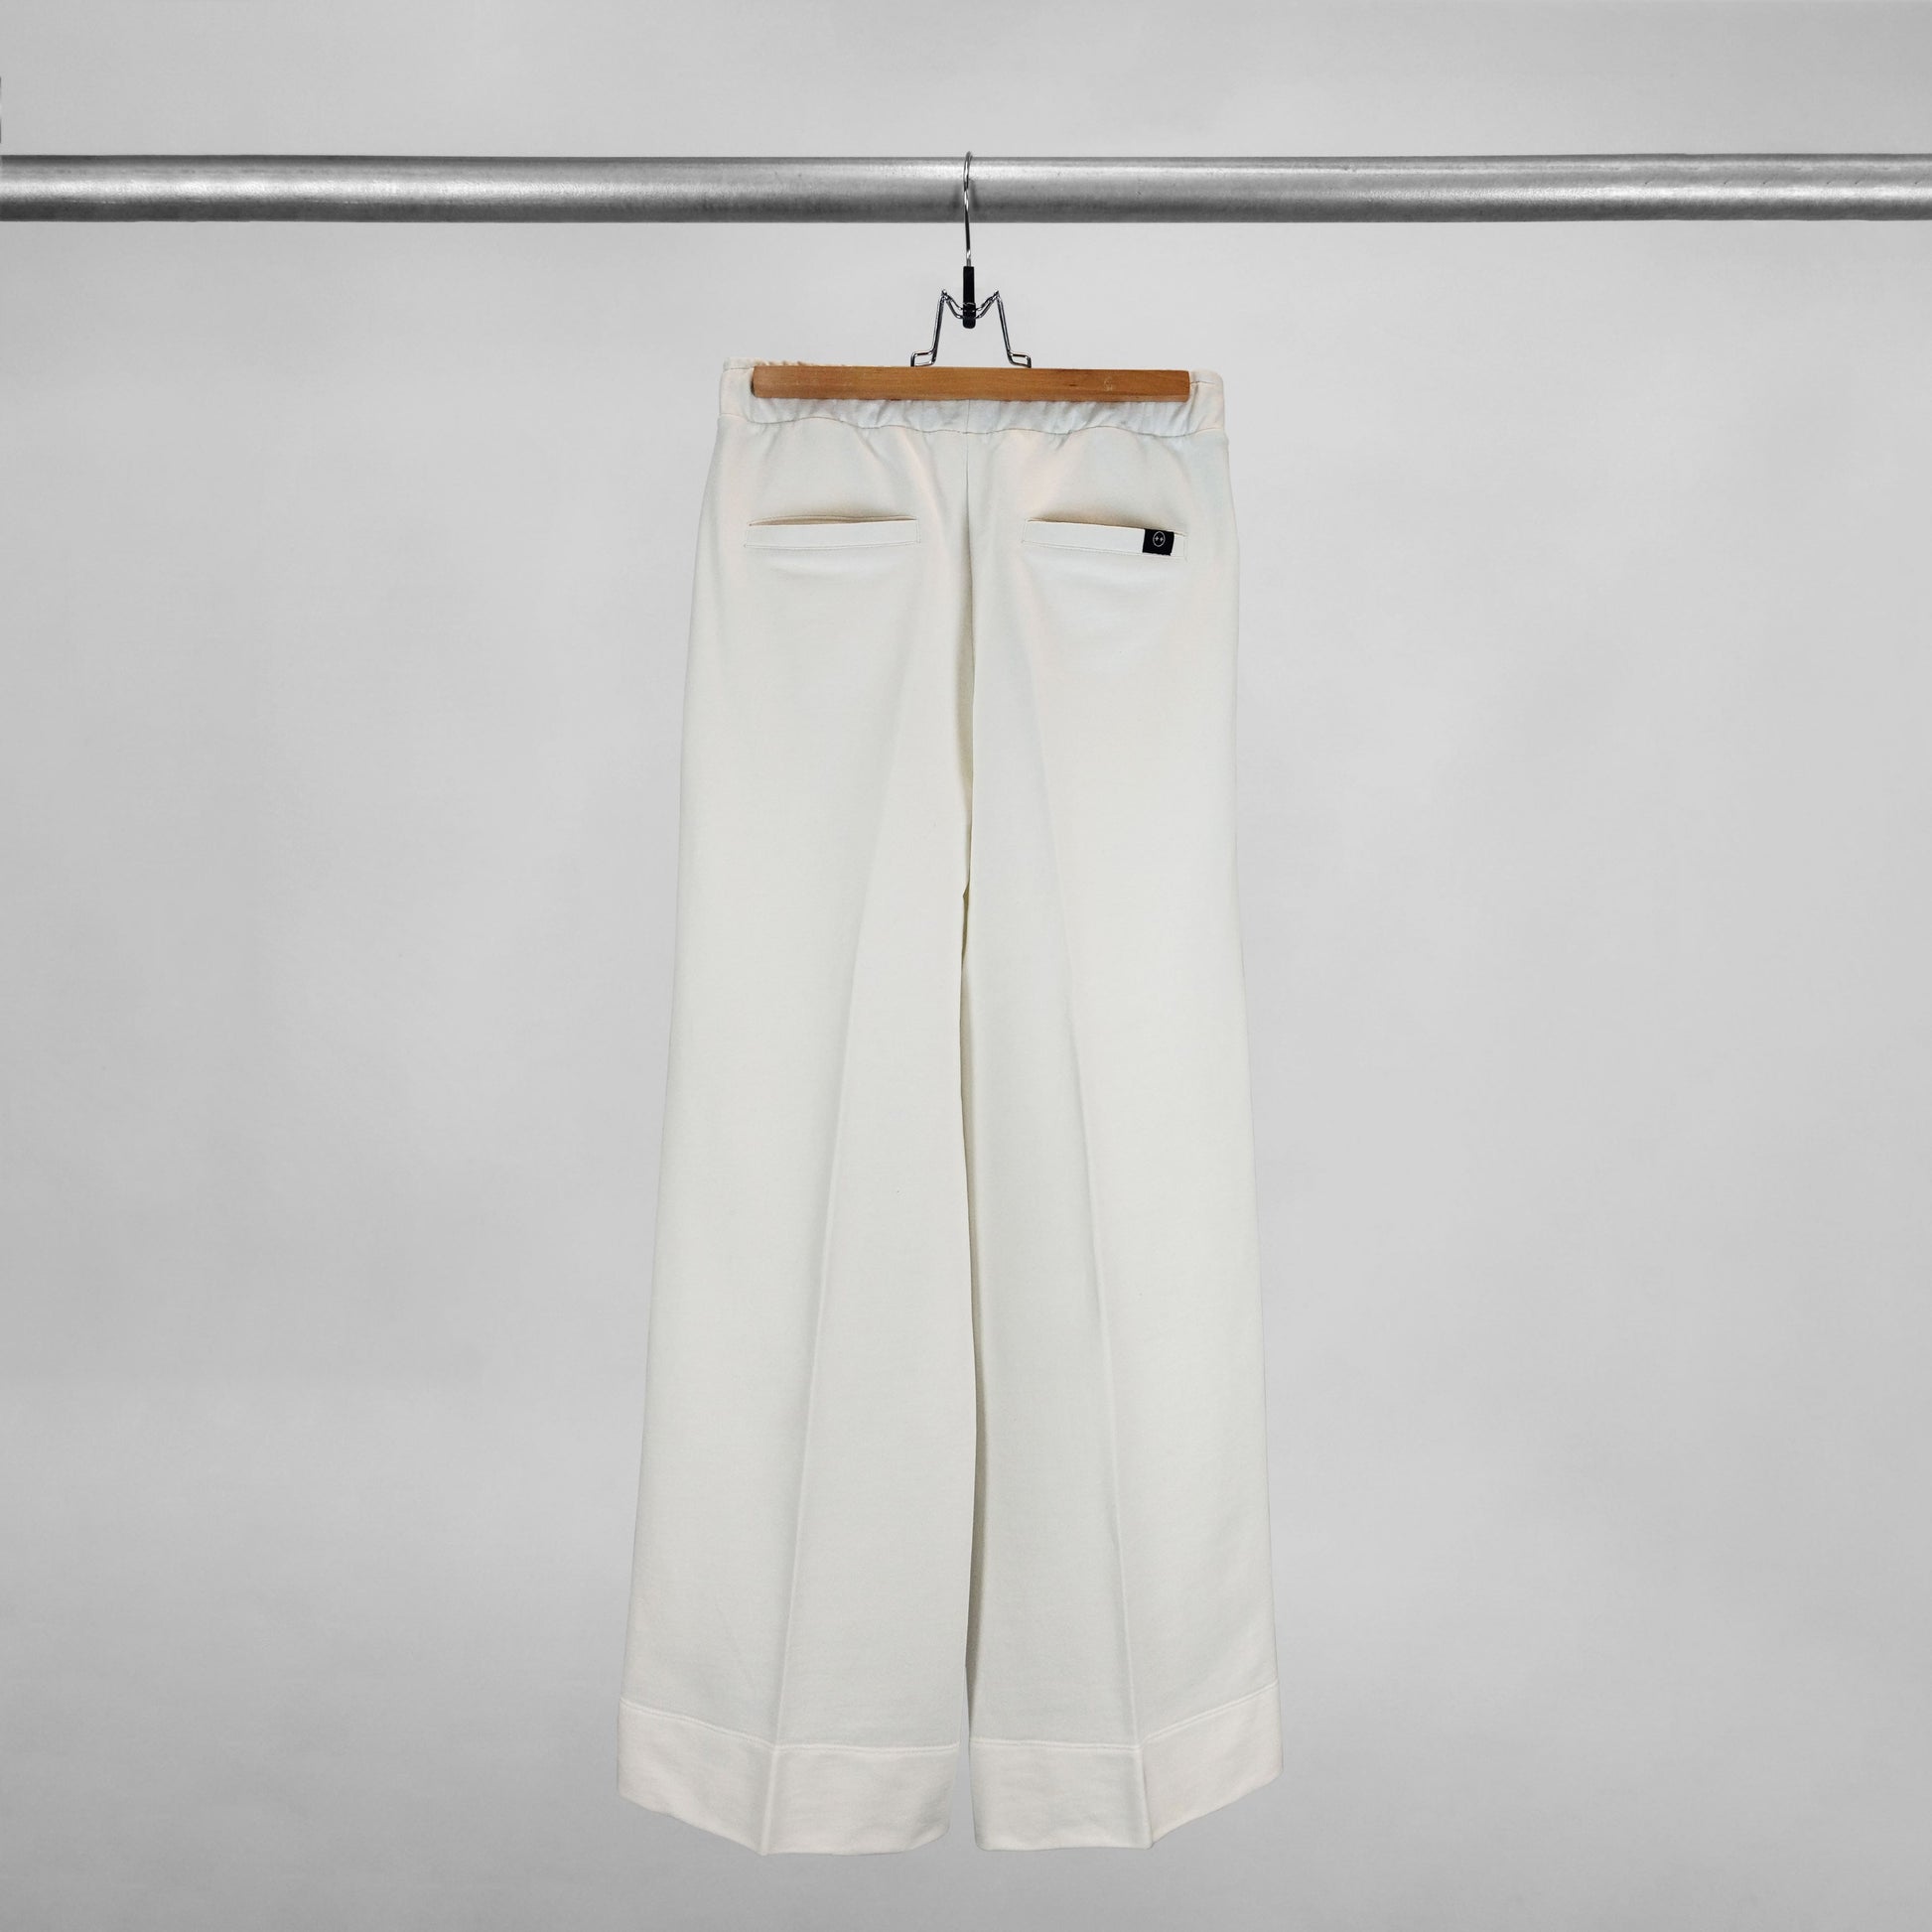 Parte trasera de pantalón bota ancha con bolsillos traseros color blanco